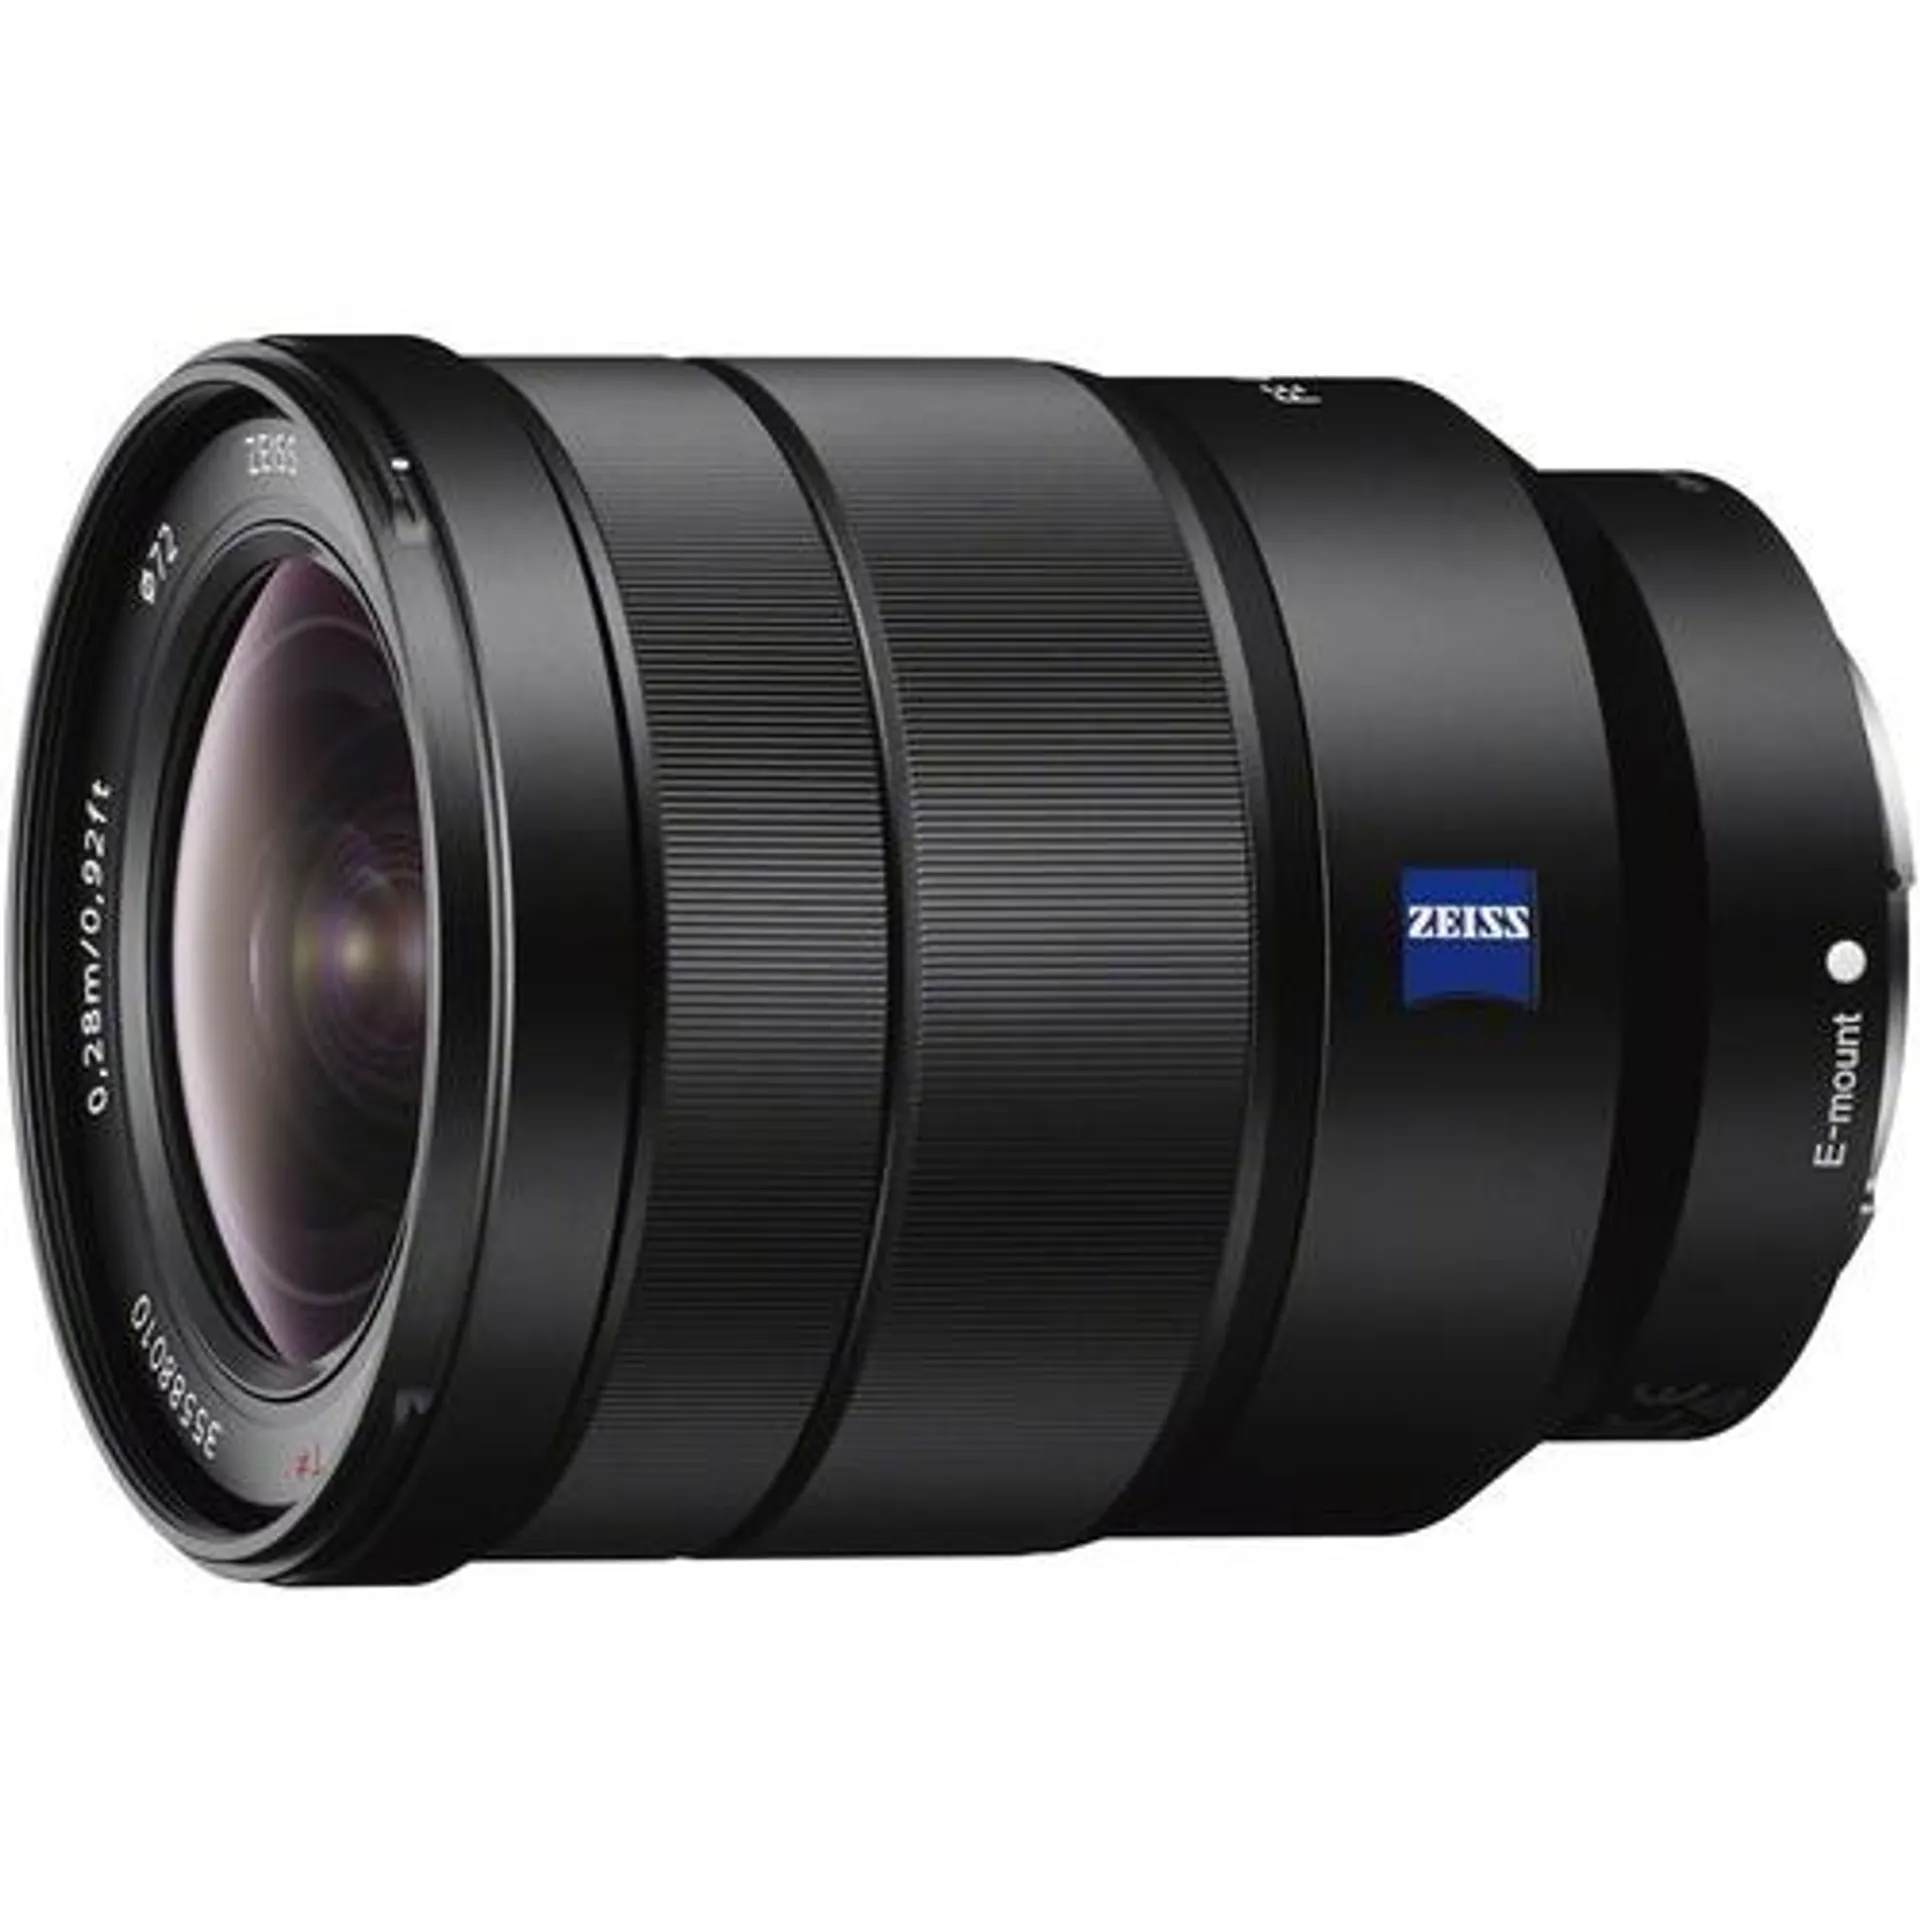 Sony SEL1635Z 16-35mm Vario-Tessar T FE F4 ZA OSS Full-frame E-Mount Lens - OPEN BOX